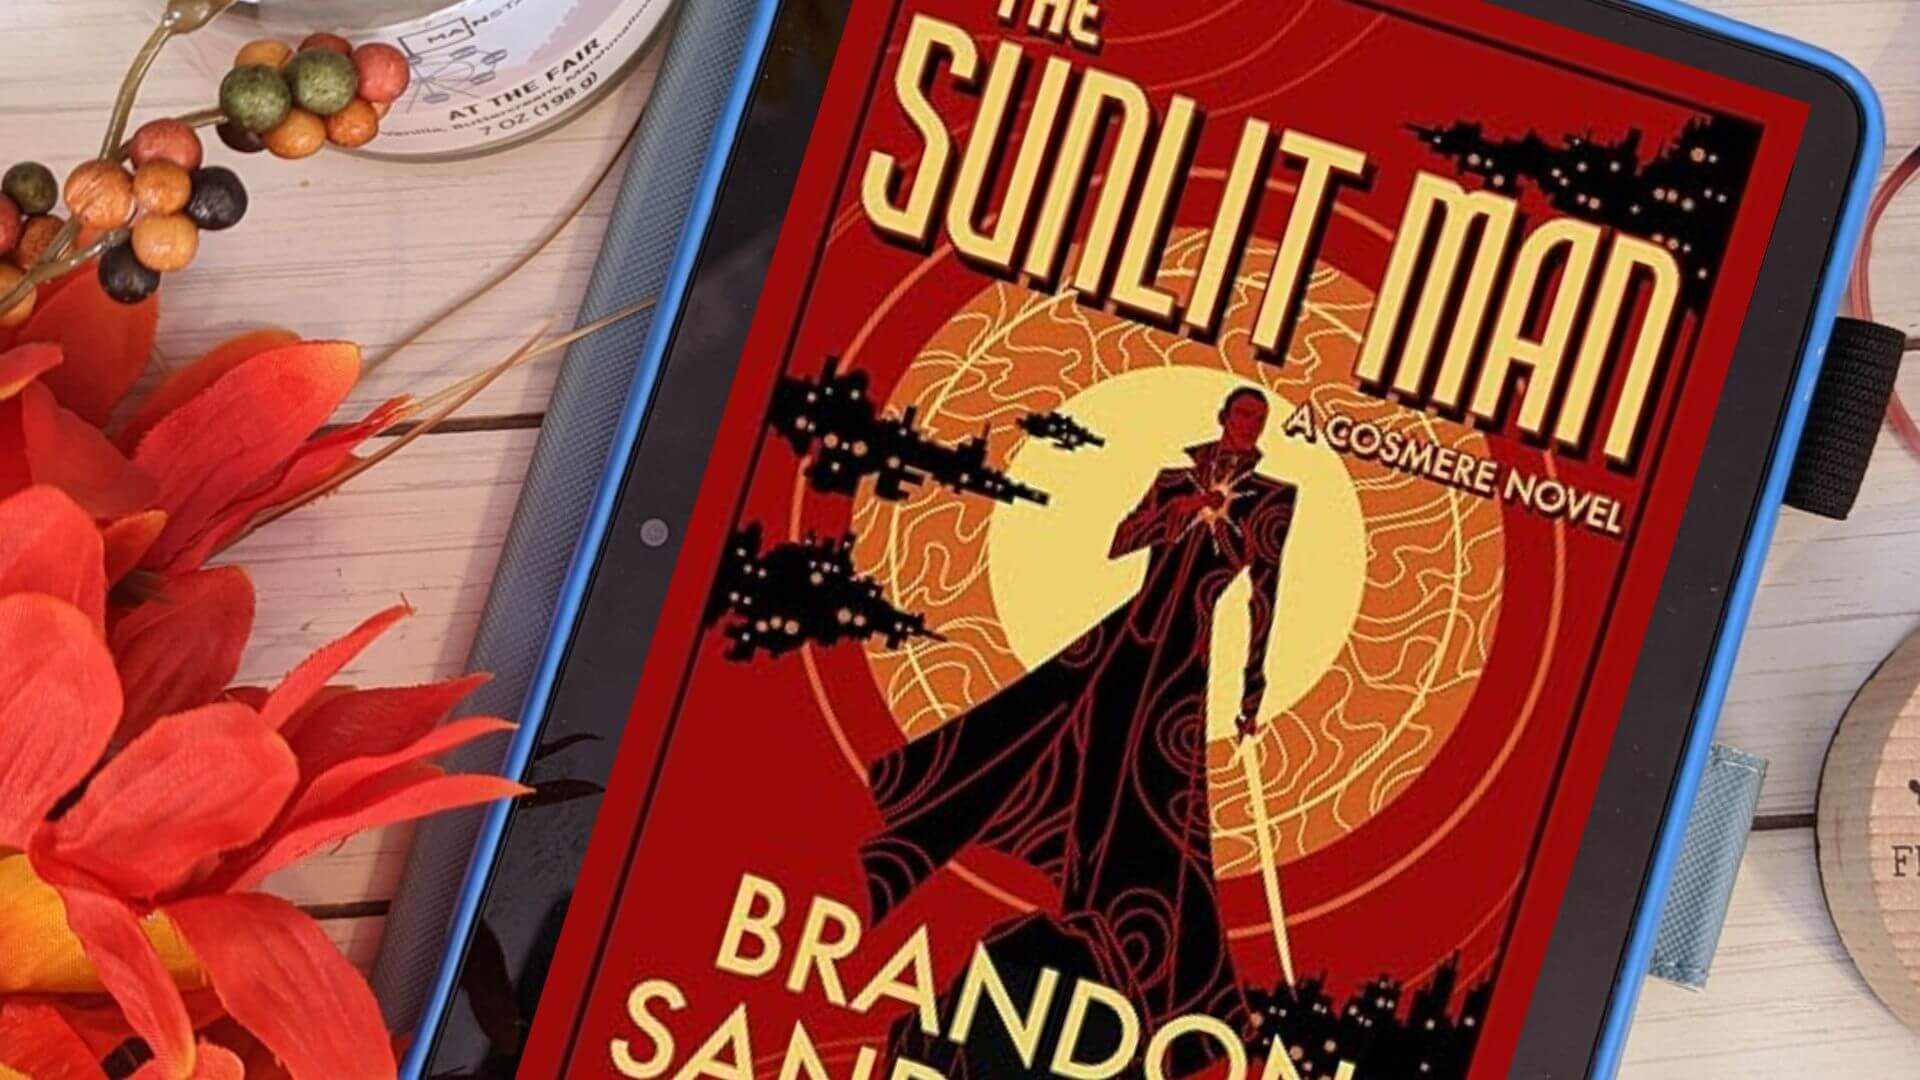 The Sunlit Man by Brandon Sanderson (Secret Project #4) Review